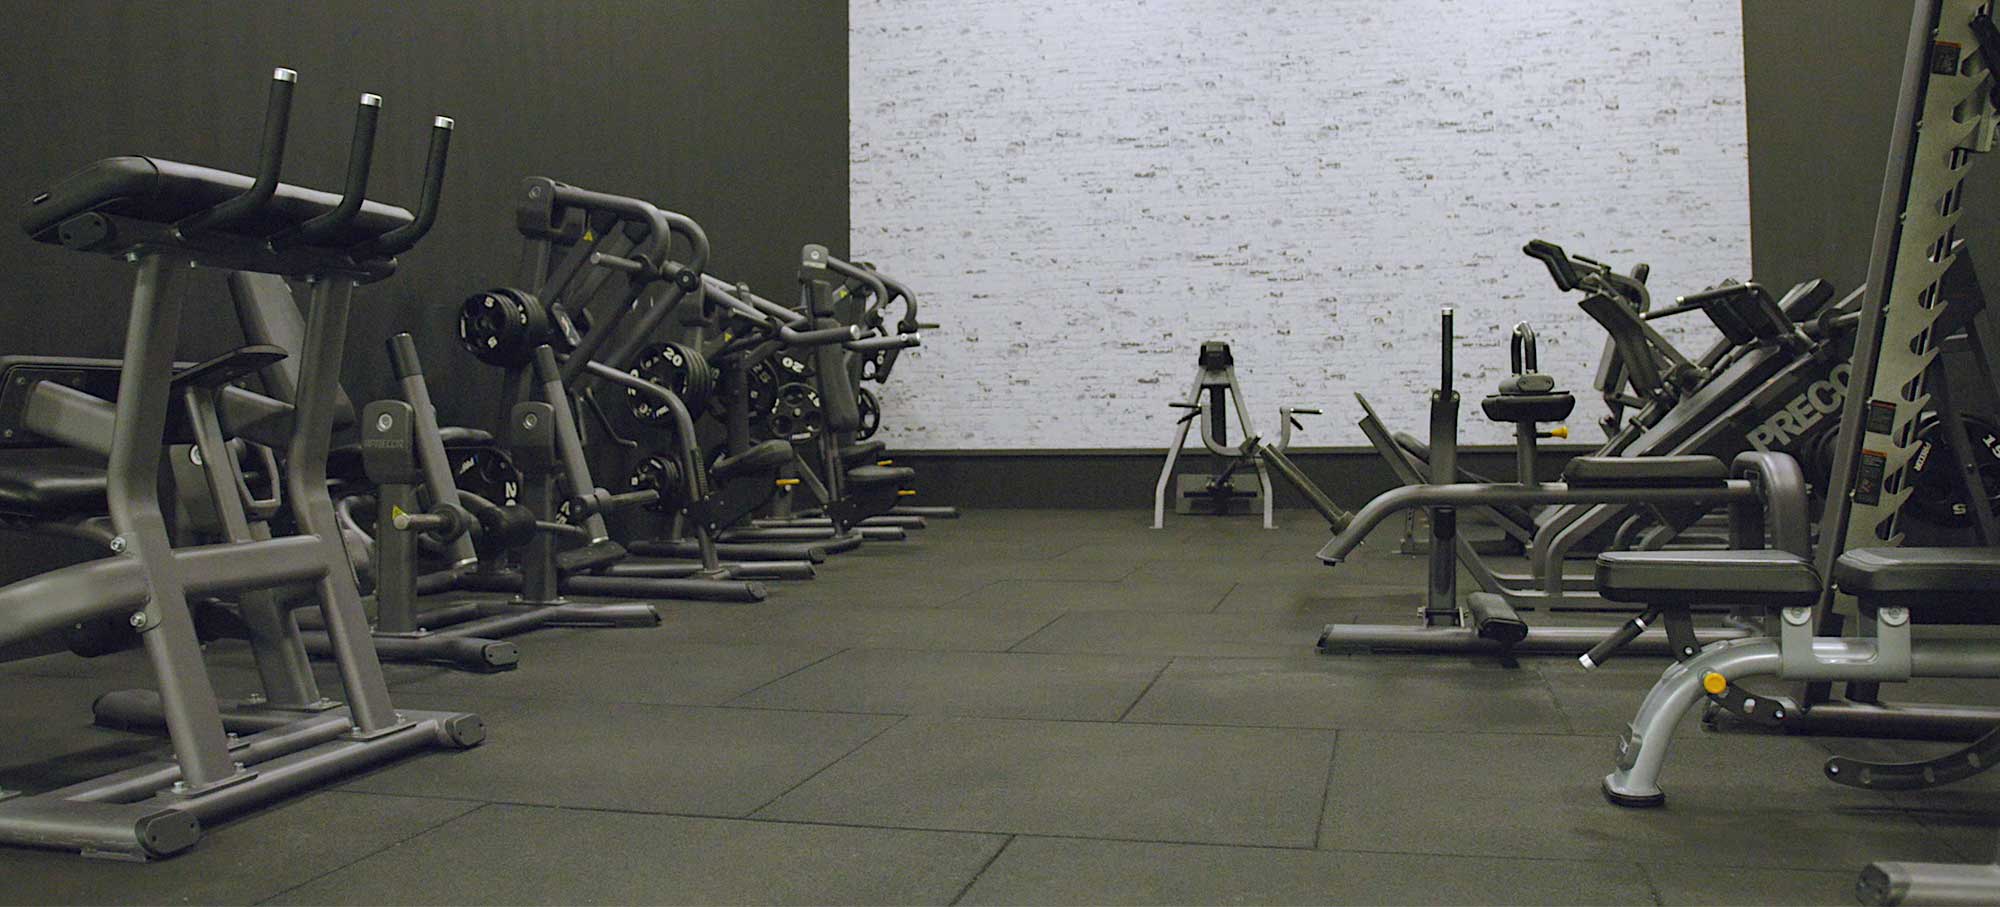 SATS Adelgade København - Fitness træningscenter - SATS